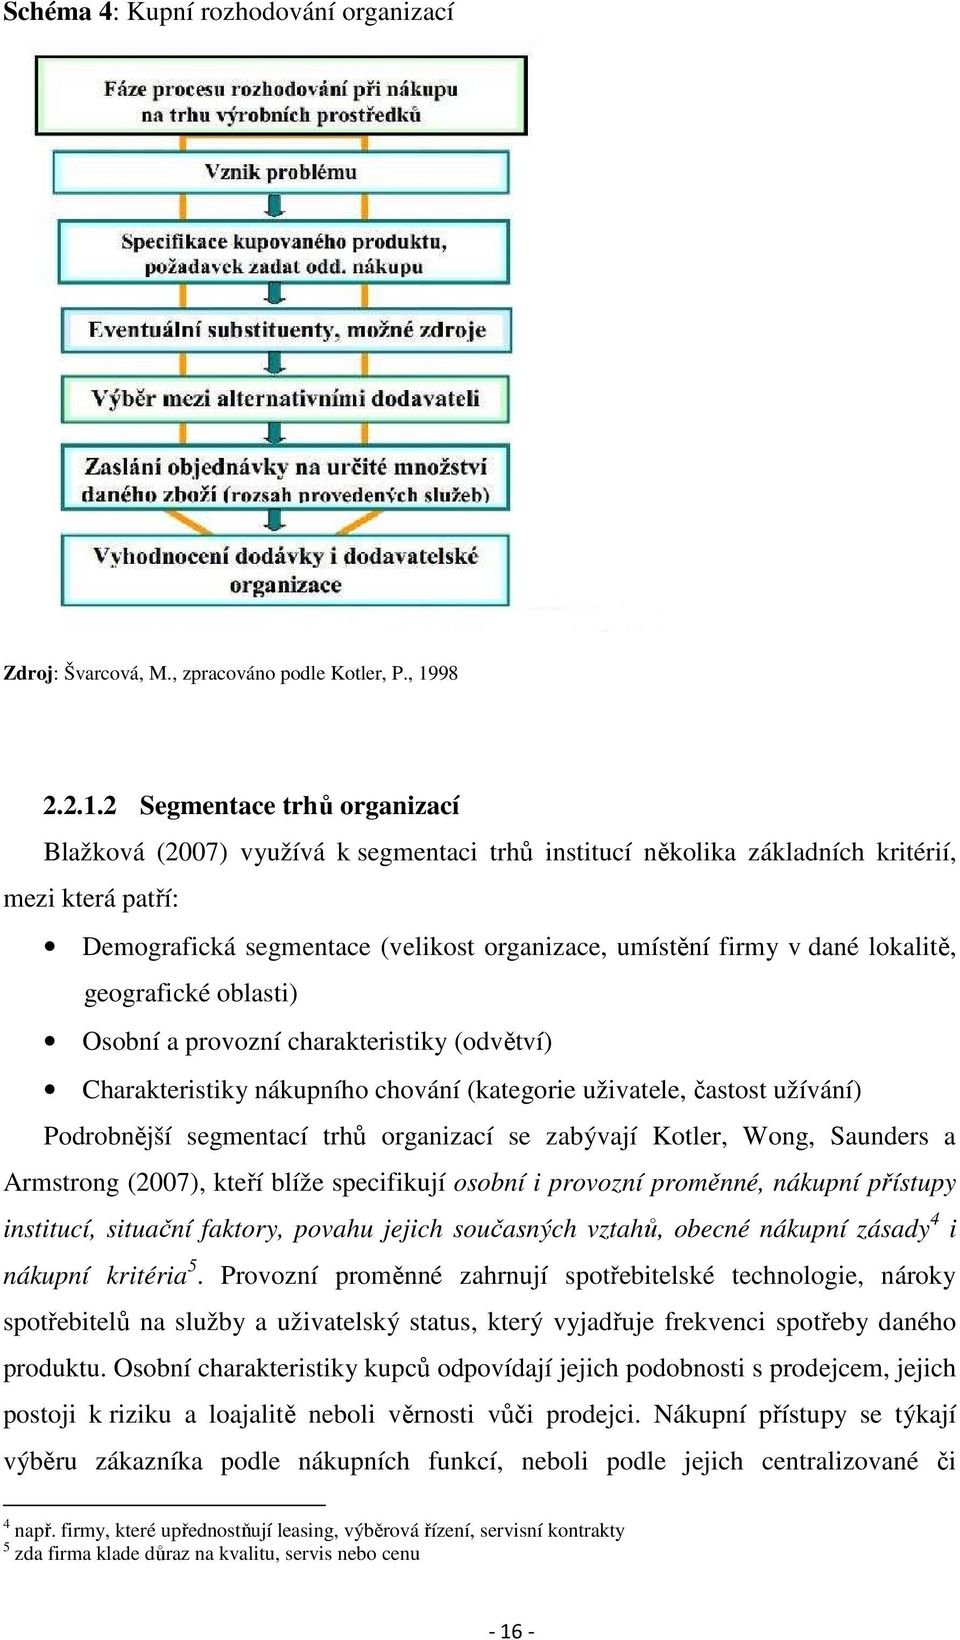 2 Segmentace trhů organizací Blažková (2007) využívá k segmentaci trhů institucí několika základních kritérií, mezi která patří: Demografická segmentace (velikost organizace, umístění firmy v dané